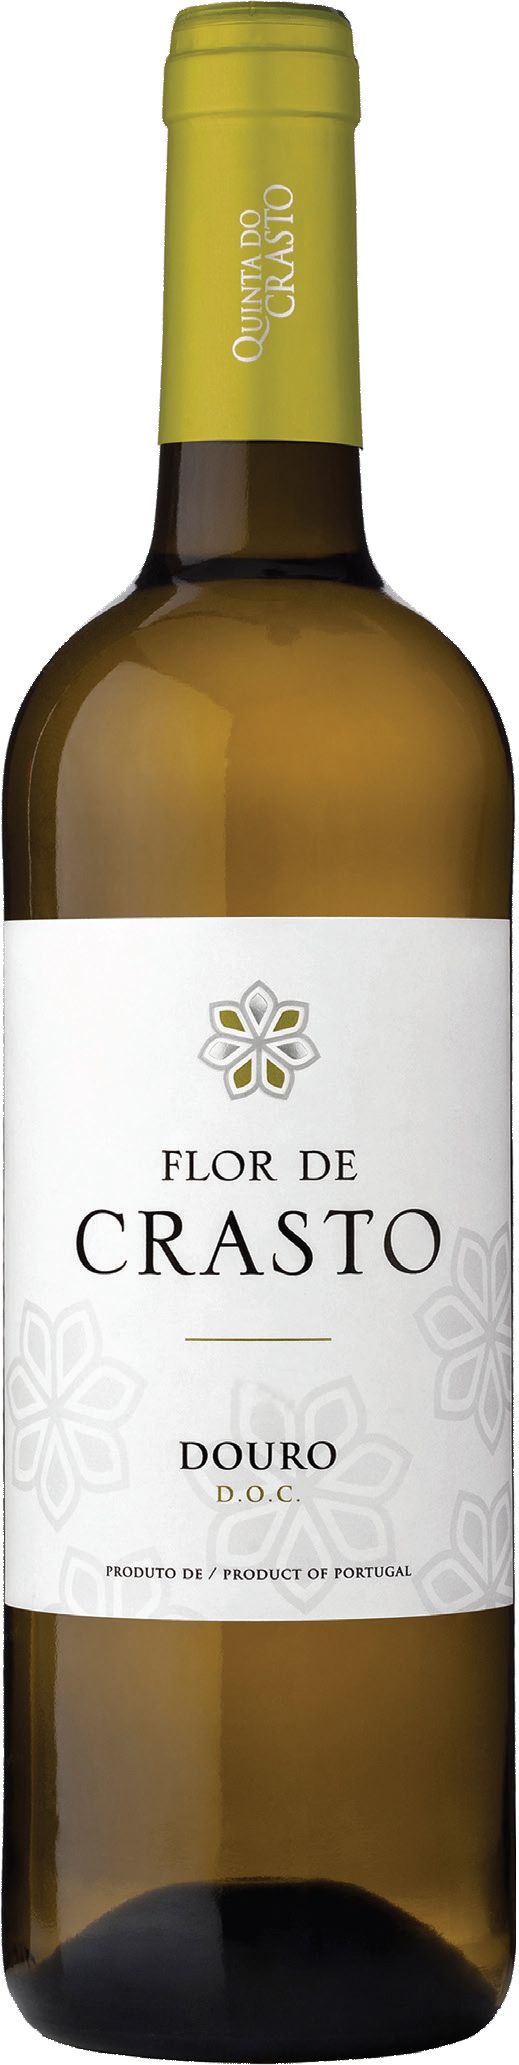 Quinta Do Crasto, Flor De Crasto Branco, 2017